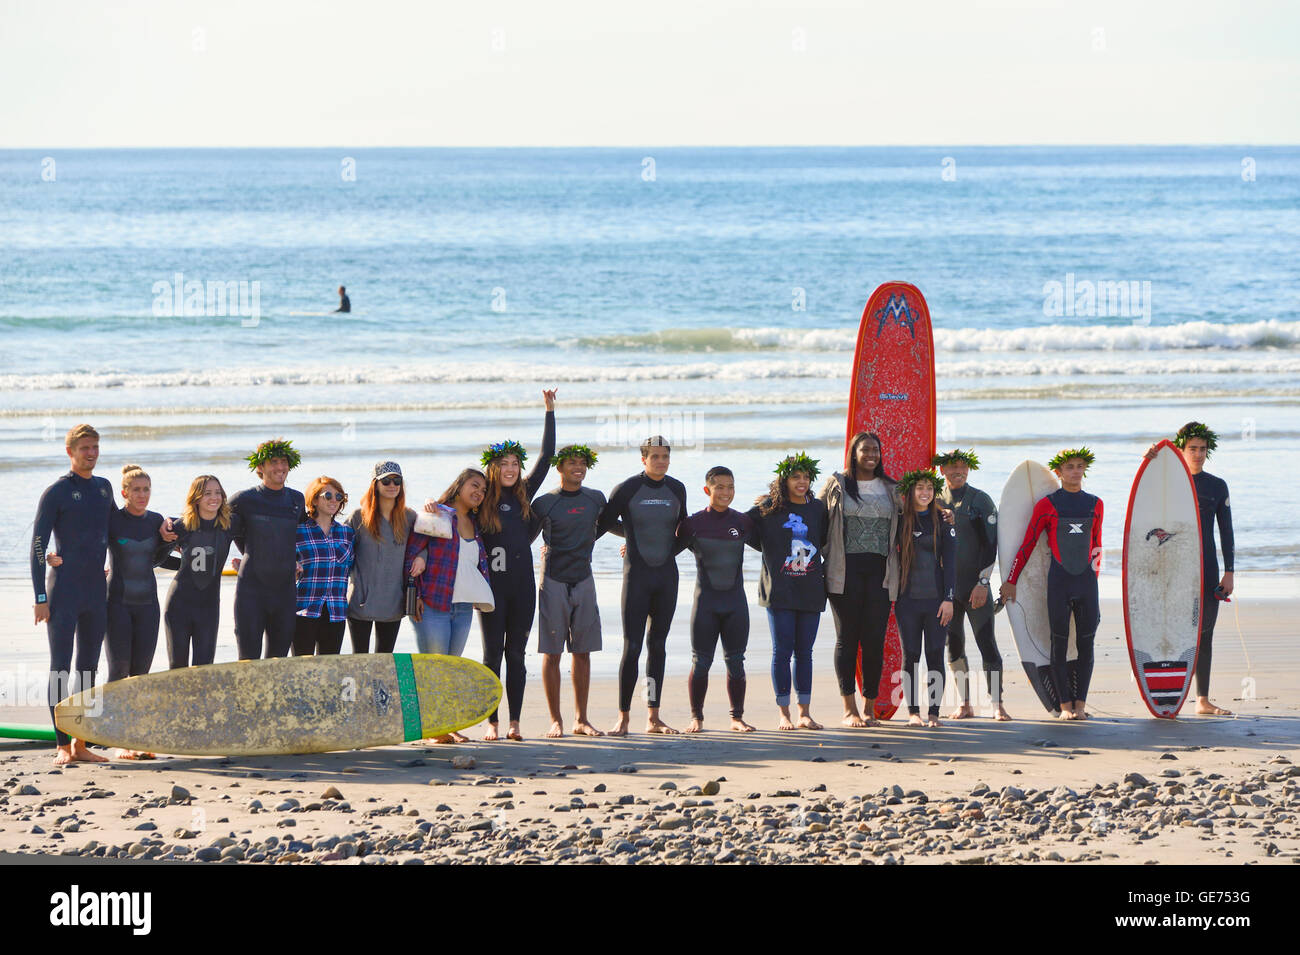 San Diego, Californie, les surfers qui pose pour photo Banque D'Images